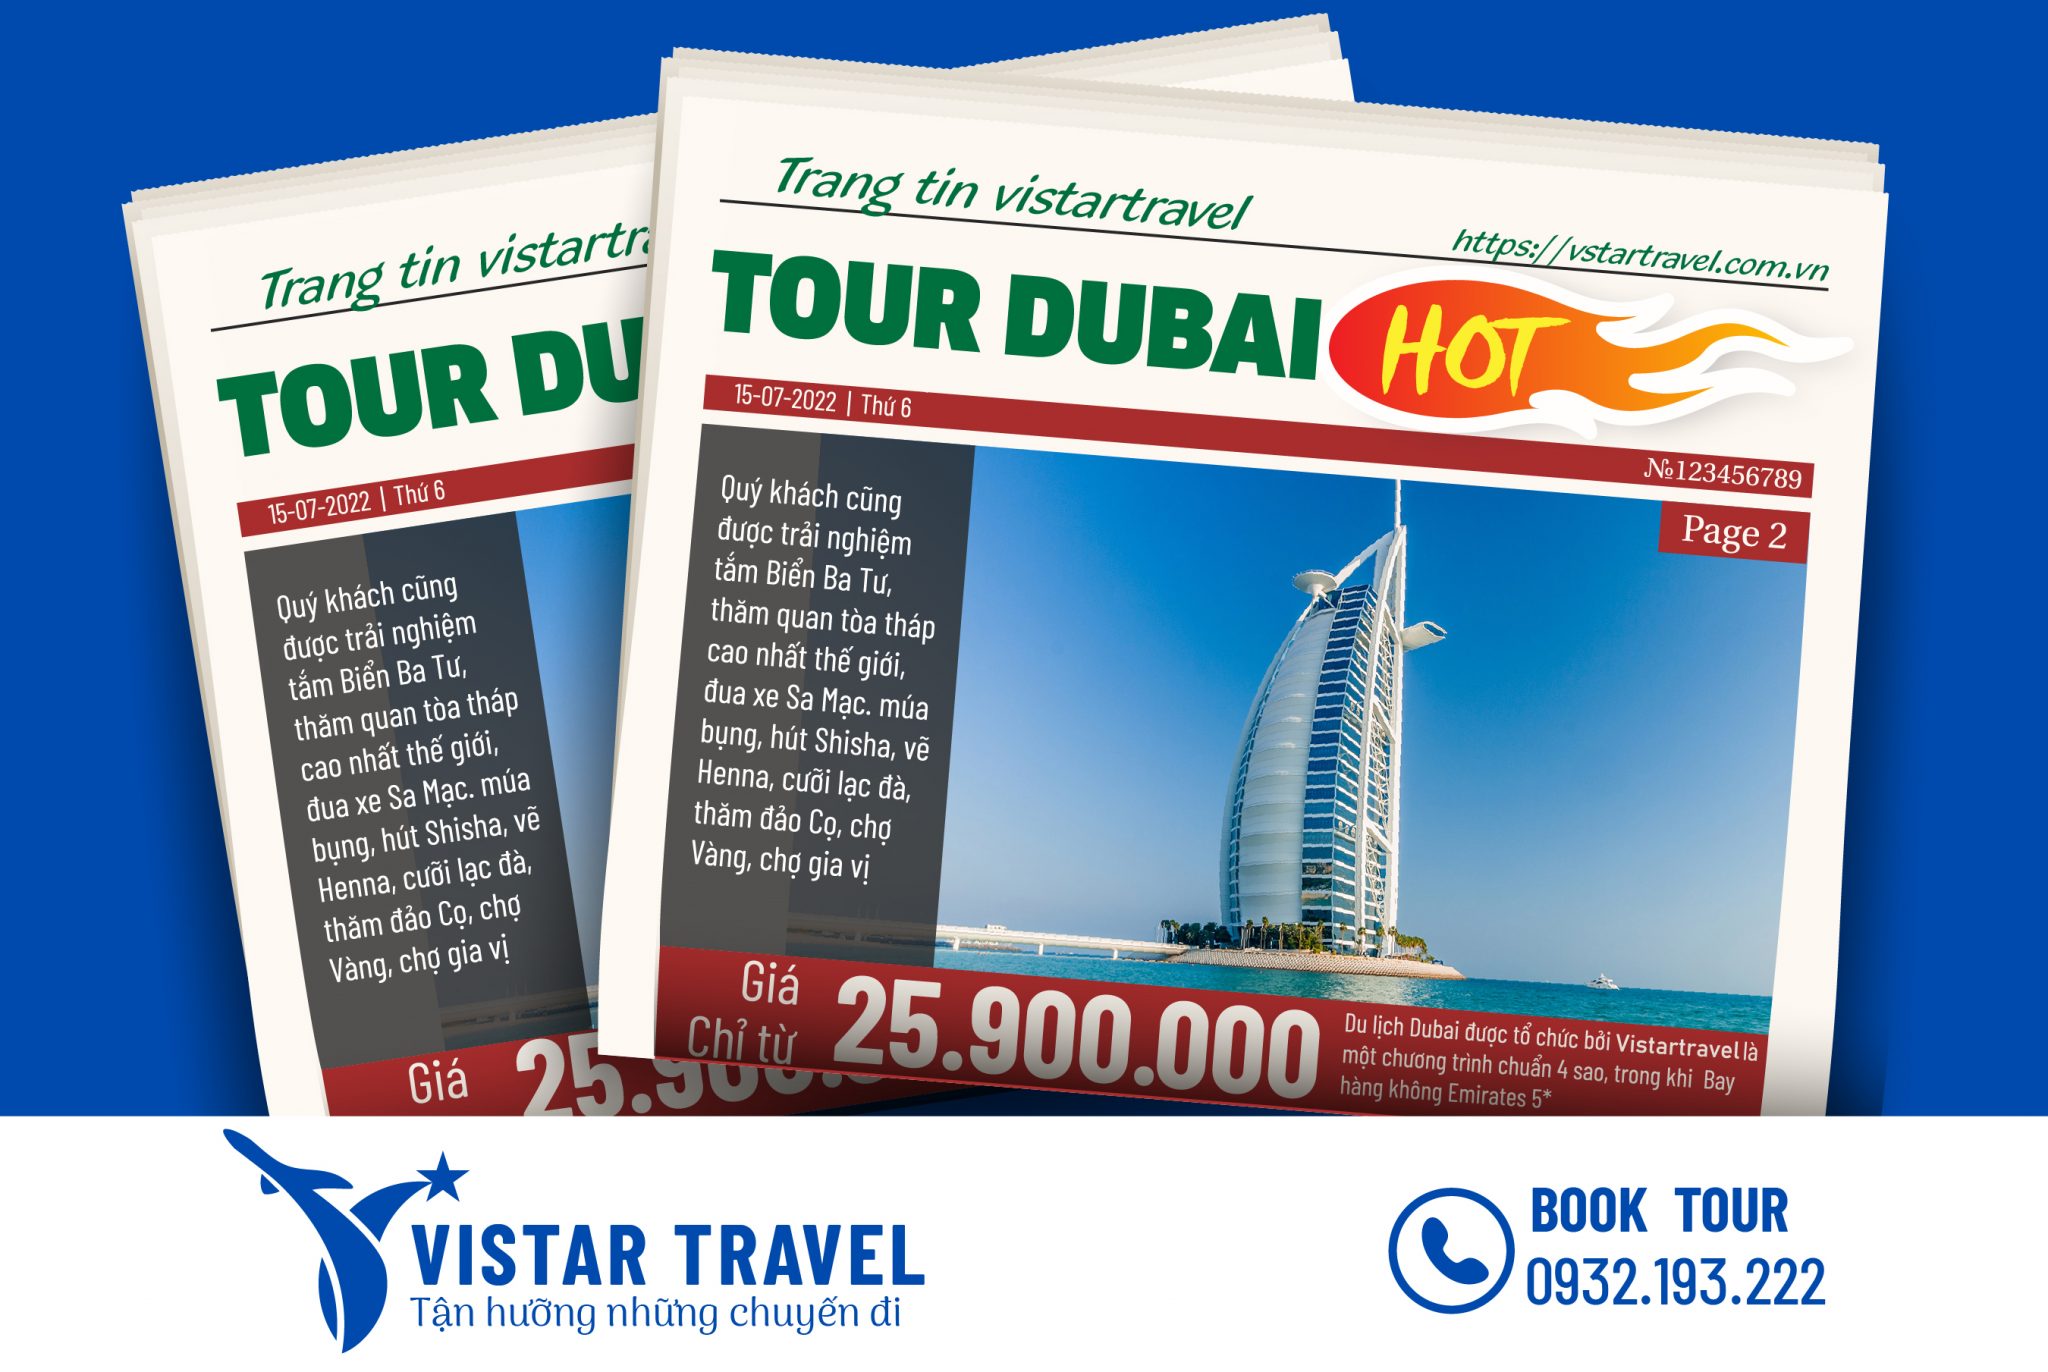 Tour Dubai Abu Dhabi: Đến với Dubai và Abu Dhabi, bạn sẽ được khám phá những địa danh hấp dẫn nhất ở Trung Đông, từ tháp Burj Khalifa thật cao tới khu thương mại lớn nhất thế giới Dubai Mall. Nơi đây còn có các bãi biển tuyệt đẹp và các khách sạn sang trọng để bạn tha hồ nghỉ ngơi và thư giãn. Xem ngay hình ảnh để được trải nghiệm chuyến du lịch đáng nhớ này!